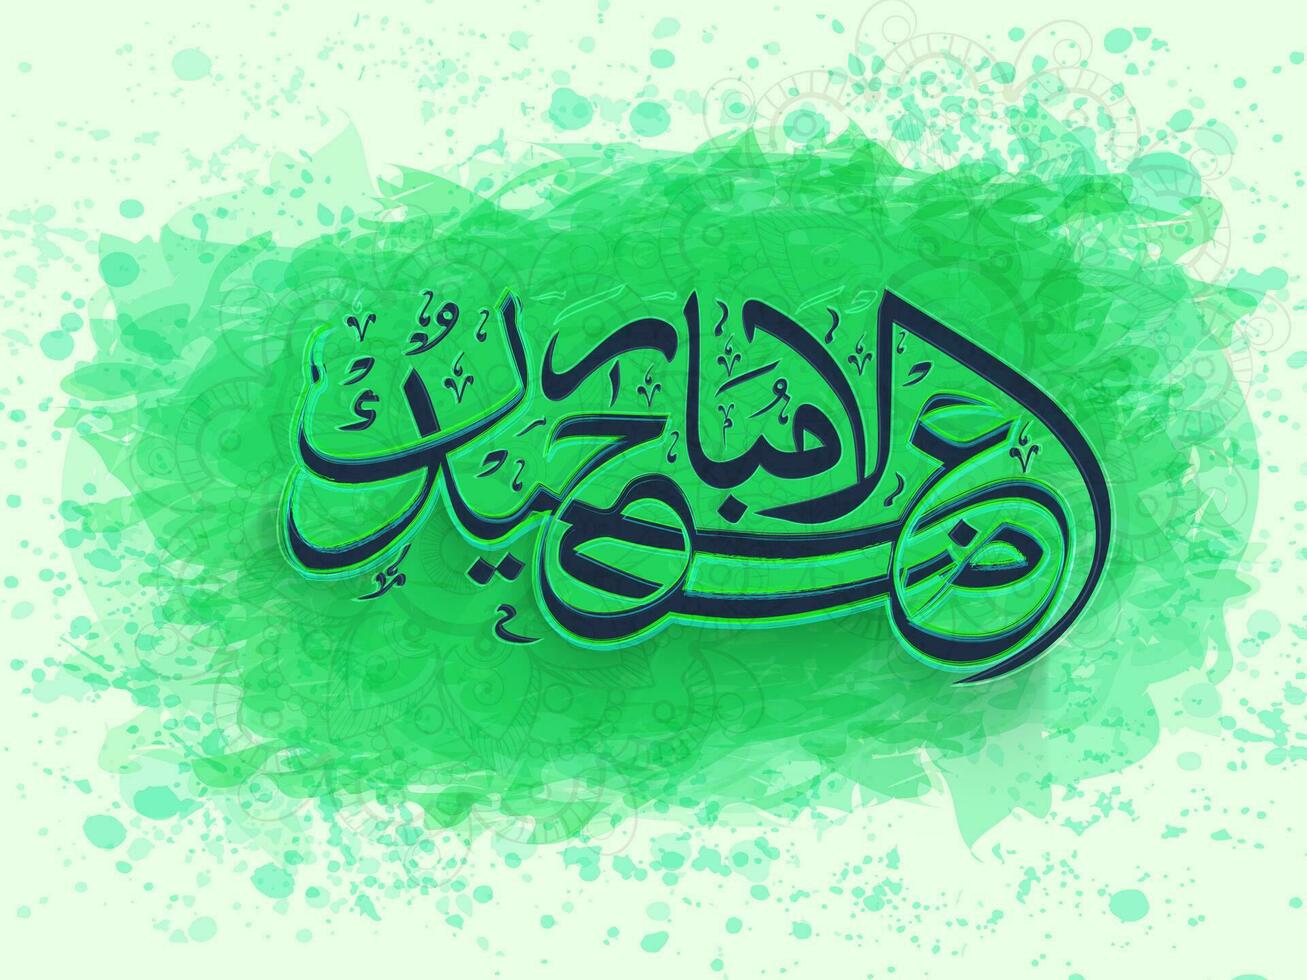 Arabisch Kalligraphie von Eidaladha Mubarak auf Grün Aquarell Spritzen Hintergrund. islamisch Festival von Opfern Gruß Karte oder Poster Design. vektor